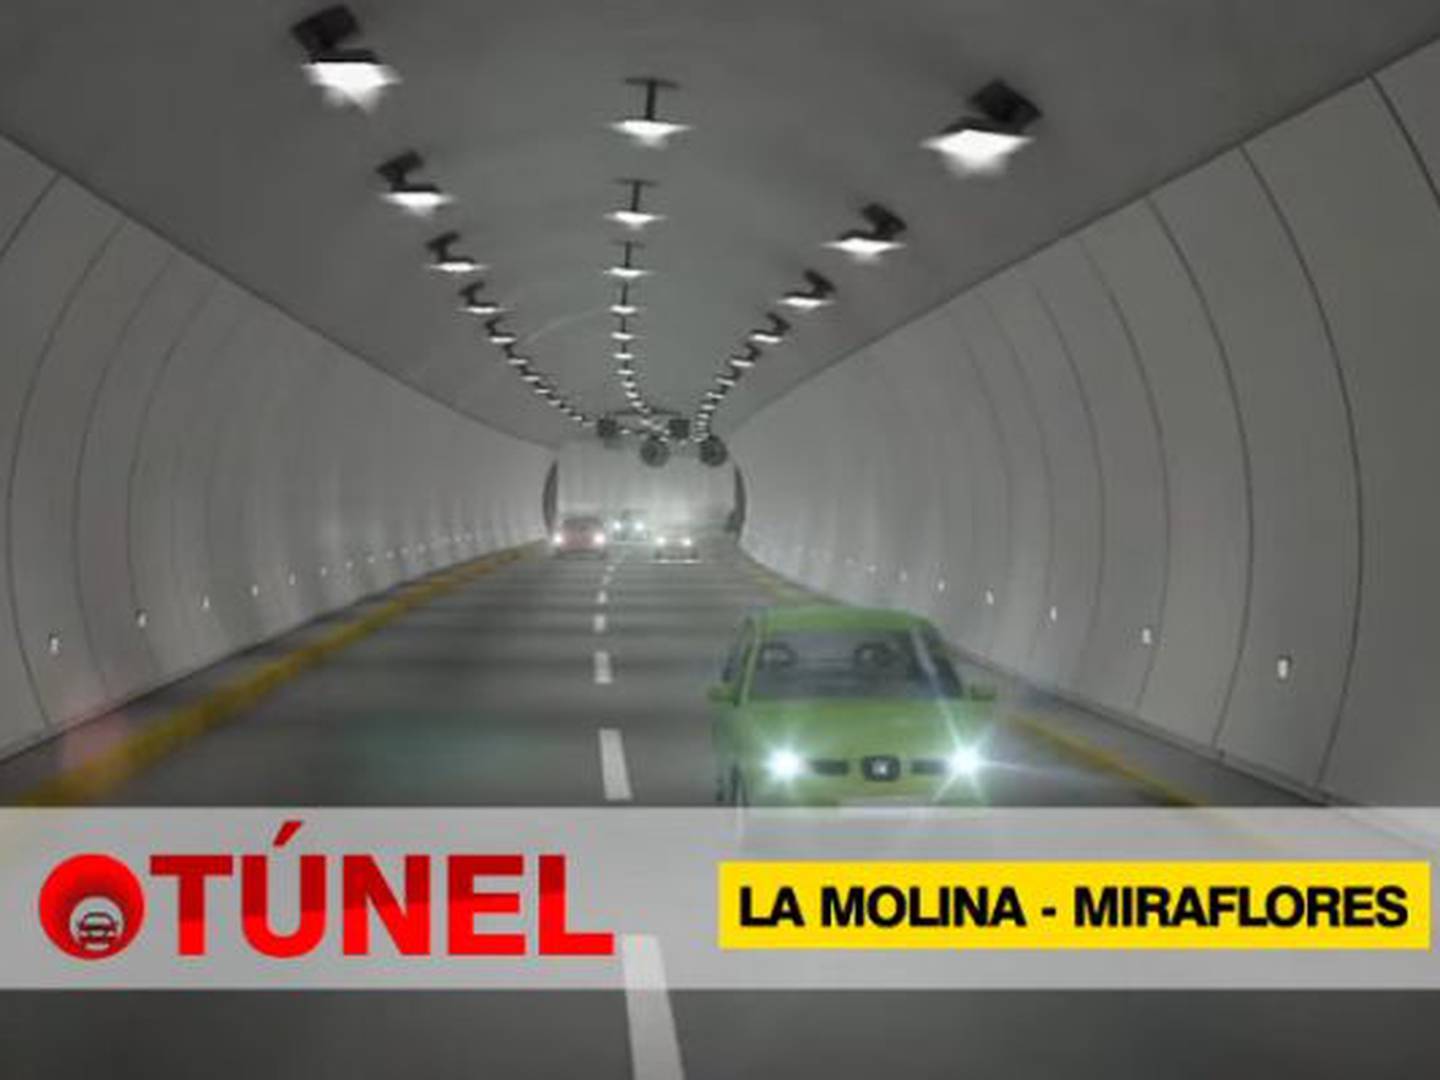 Construcción de túnel La Molina-Miraflores iniciaría en 2018 y quedaría así  – Publimetro Perú